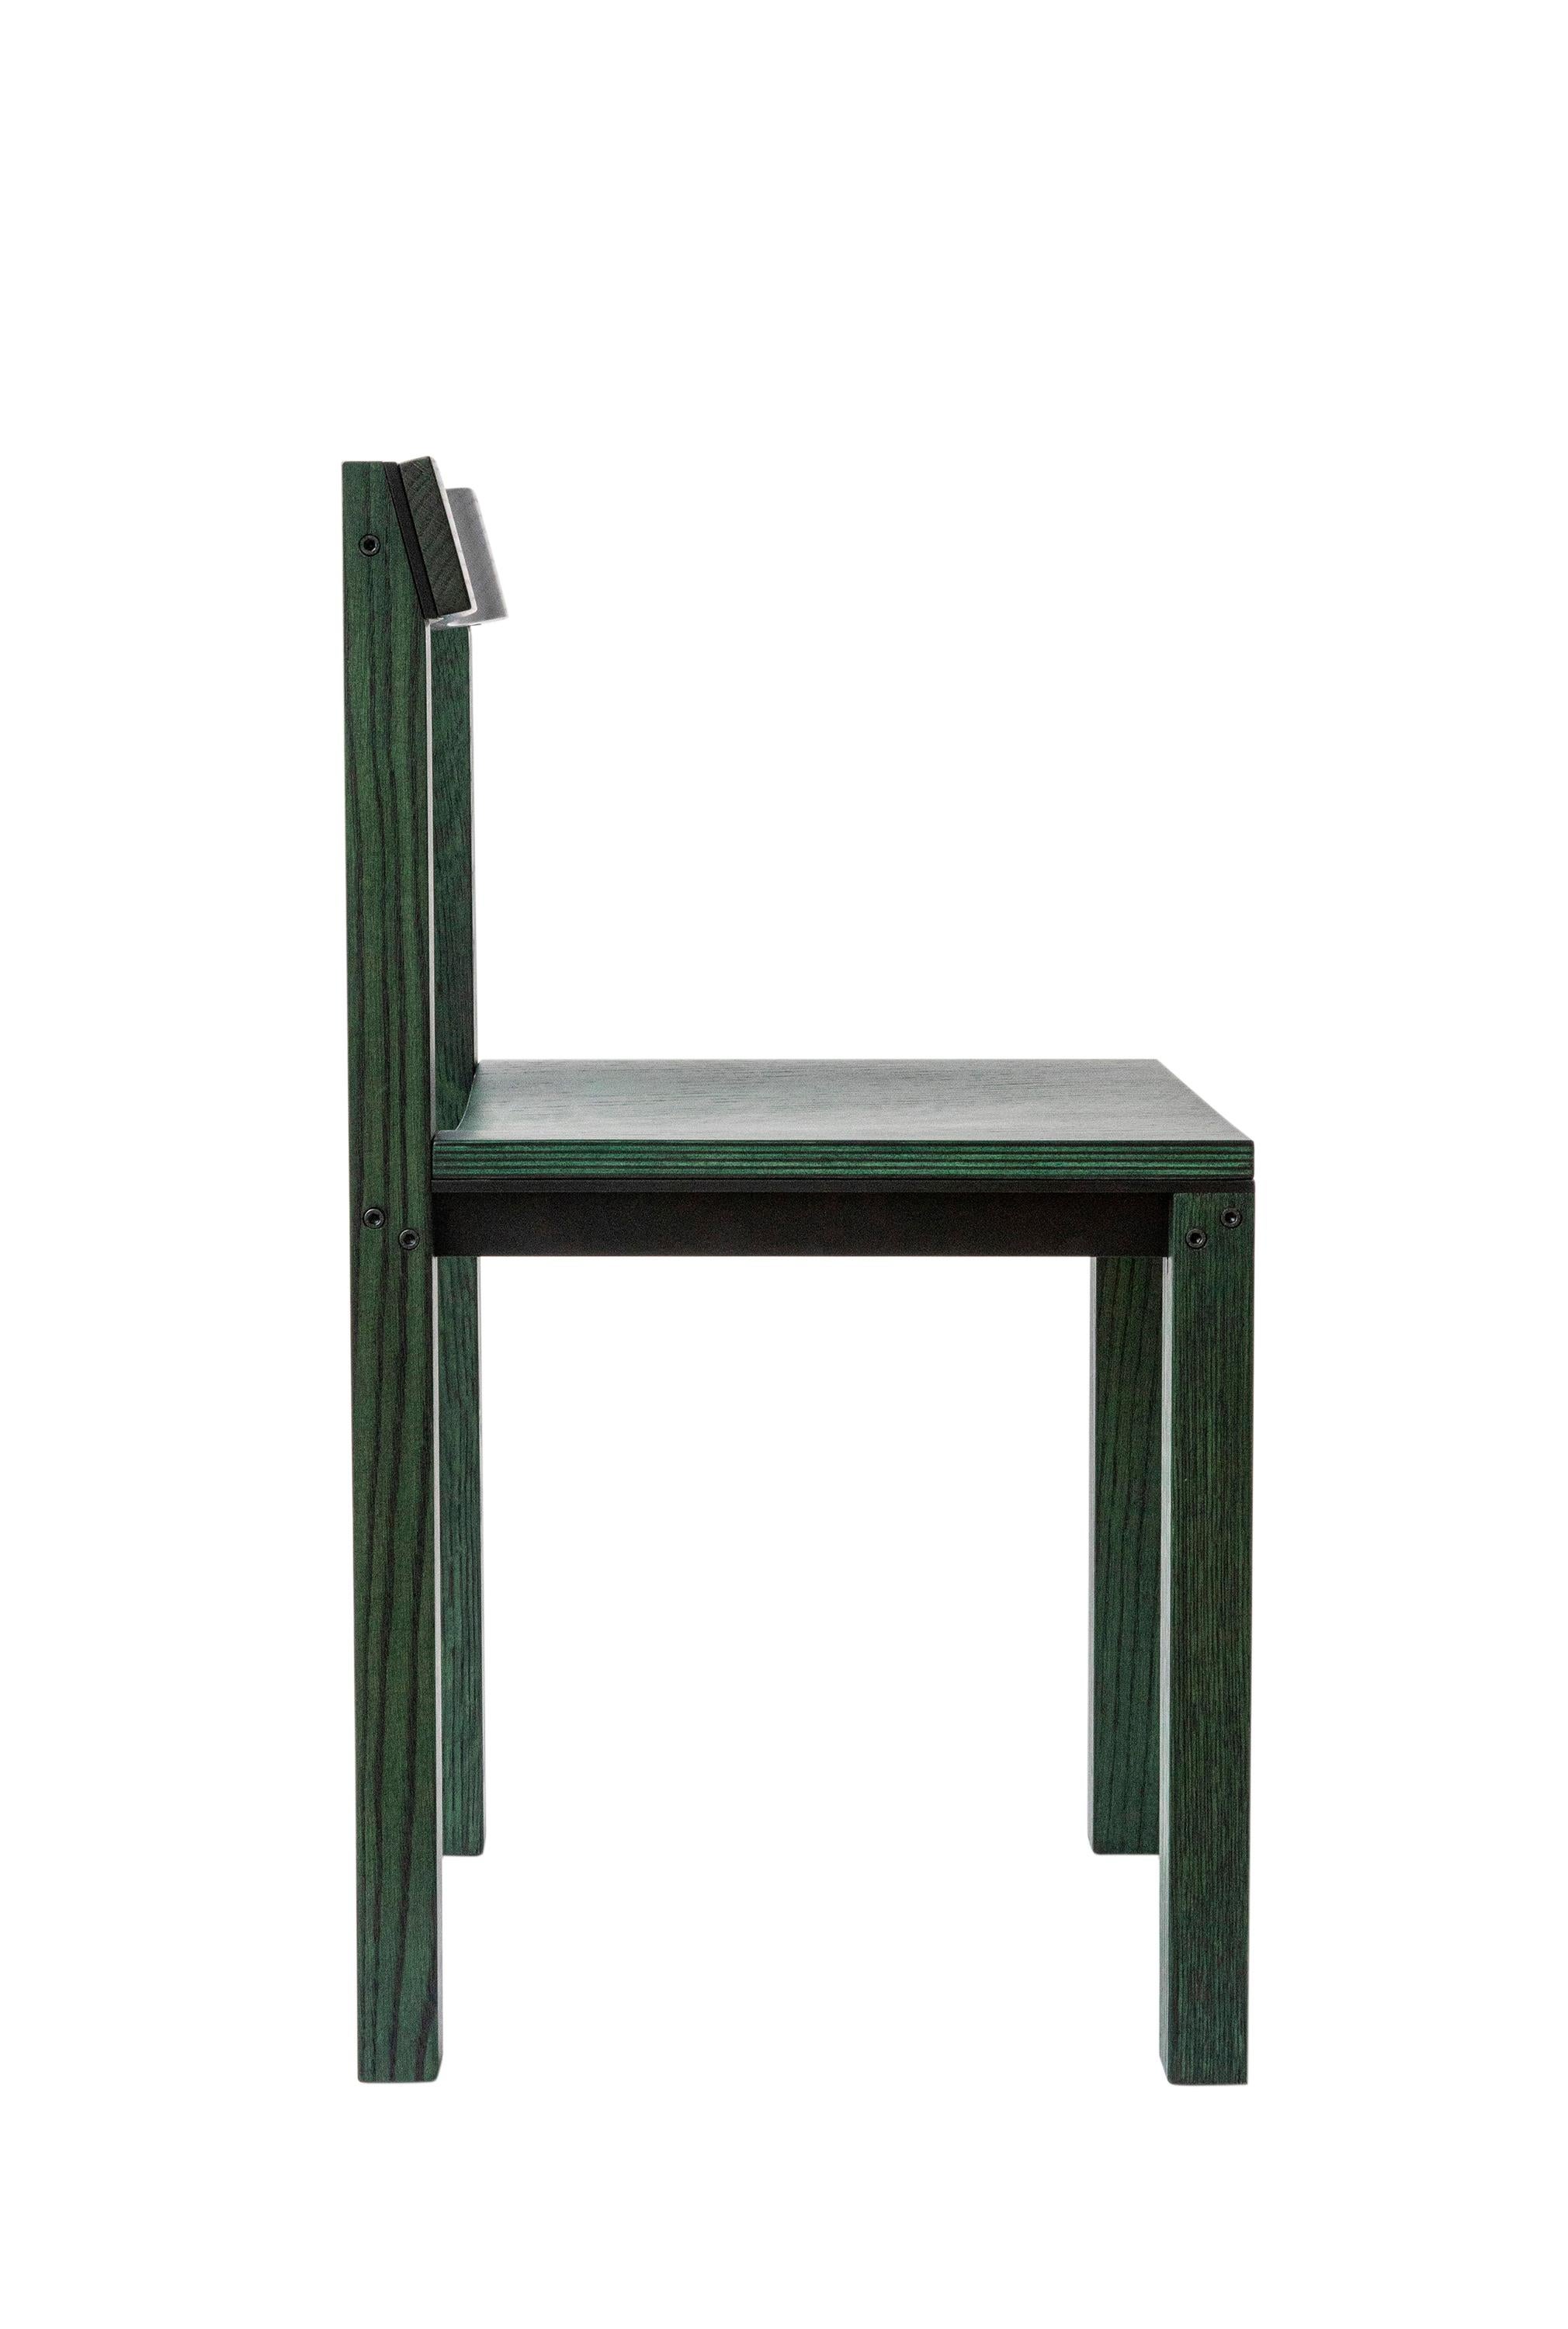 Satz von 8 Stühlen aus Talgrüner Eiche von Kann Design
Abmessungen: T 40 x B 44 x H 80 cm.
MATERIALIEN: Grün lackierte Eiche, Aluminium.
Erhältlich in anderen Ausführungen.

Der von Léonard Kadid entworfene Stuhl Tal ist aus Aluminium und Holz